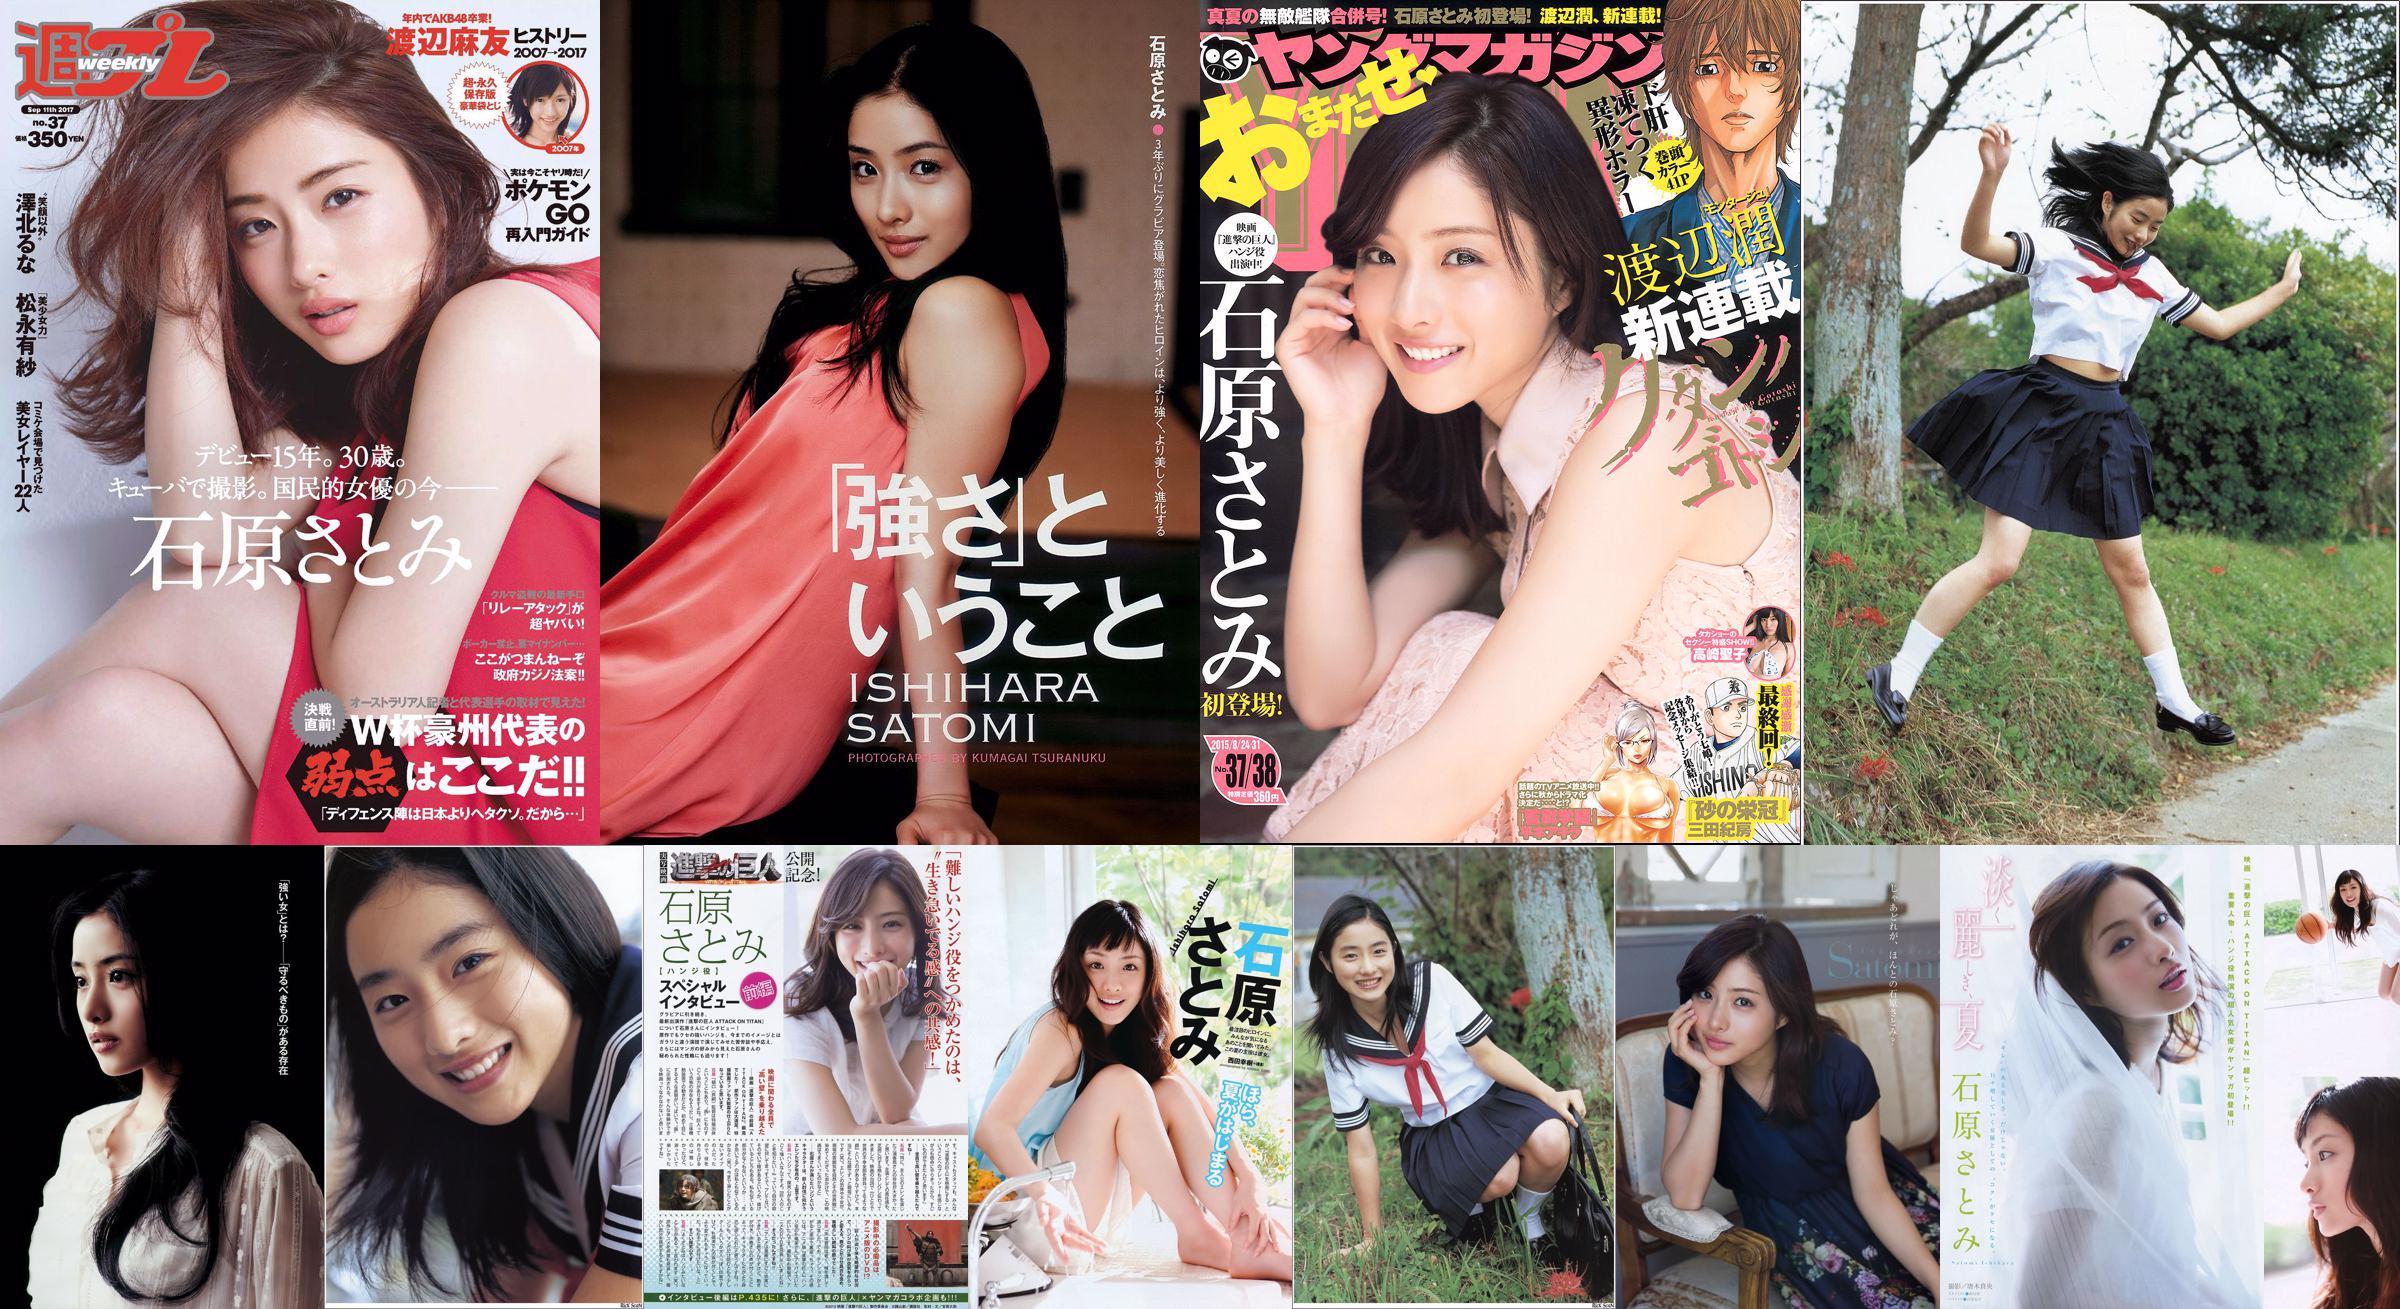 [Young Magazine] Ishihara さとみ Takasaki Seiko 2015 No.37-38 Photo Magazine No.b865ba Page 2